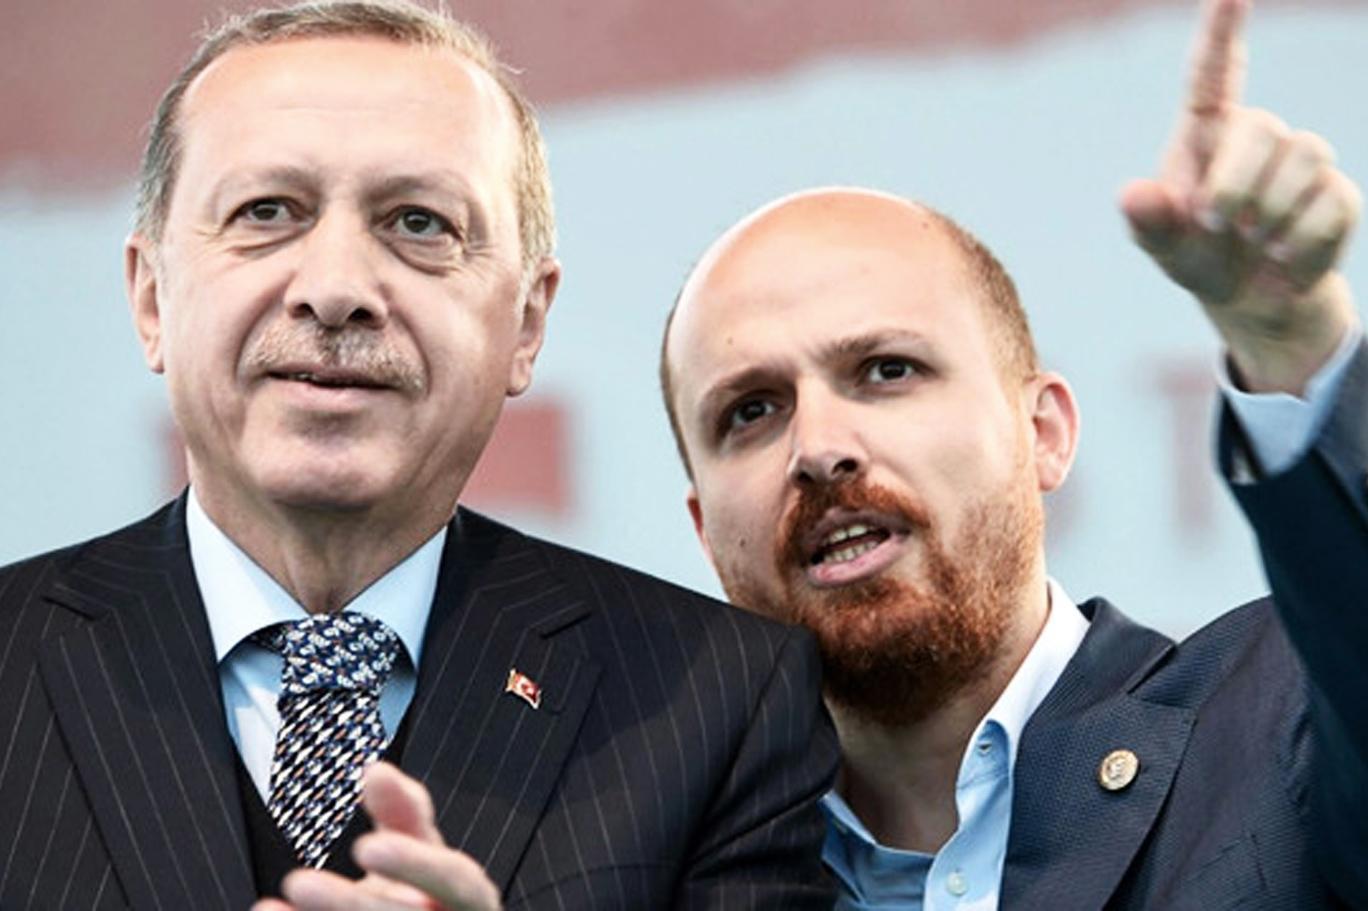 Reuters: ABD ve İsveç savcıları Bilal Erdoğan’ın adının geçtiği yolsuzluk şikayetini inceliyor